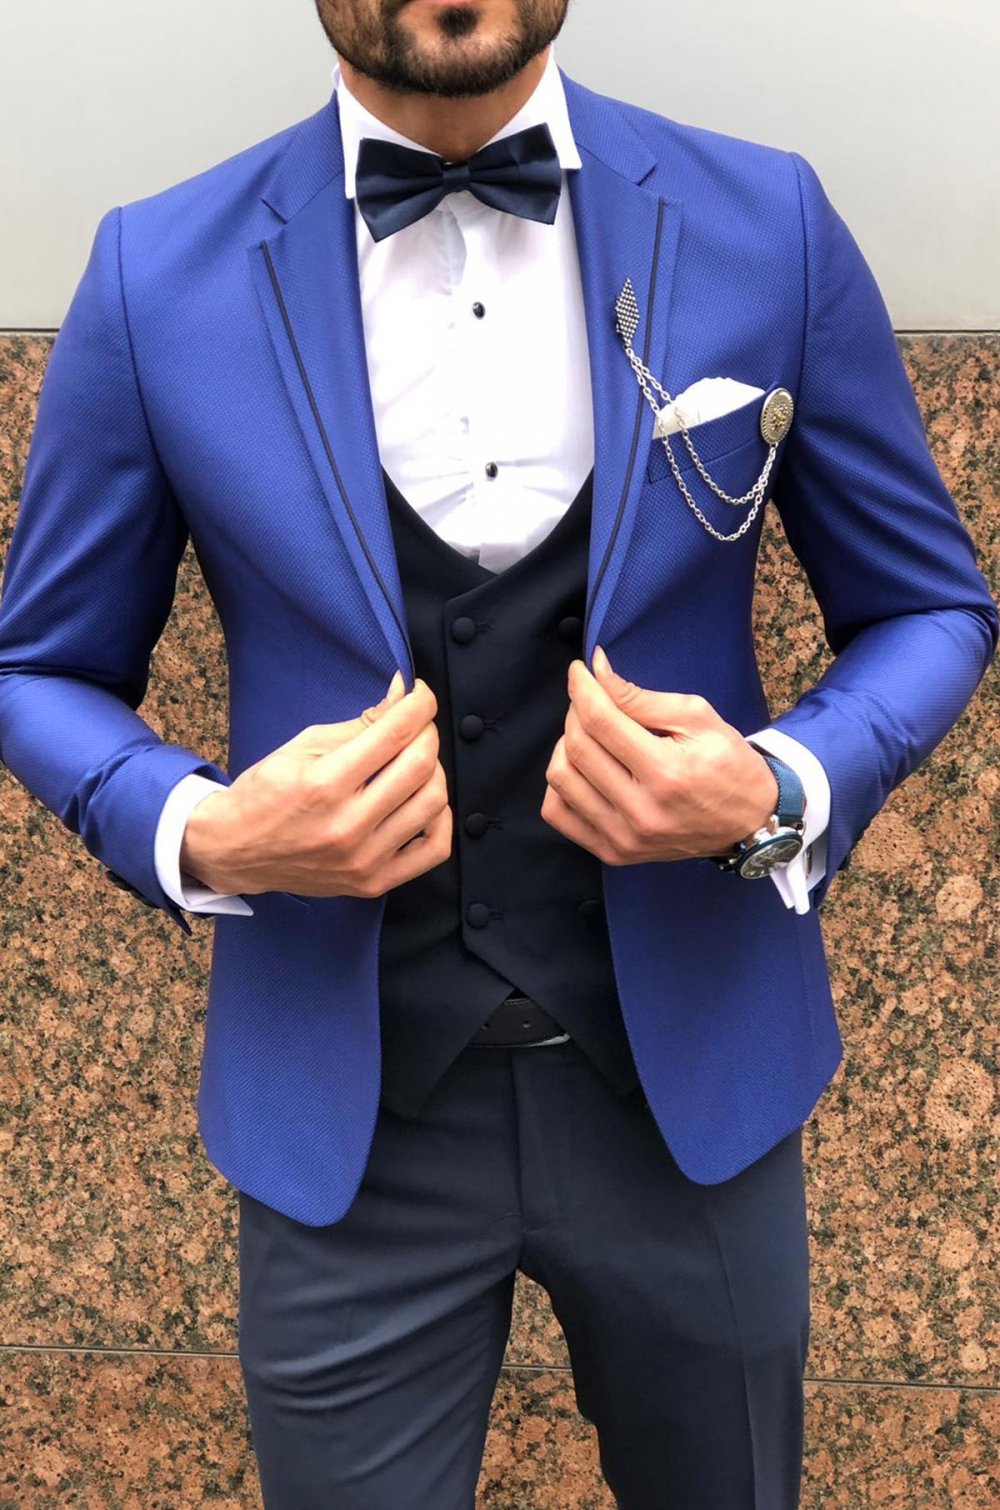 Luca Slim-Fit Suit Vest Sax-baagr.myshopify.com-suit-BOJONI